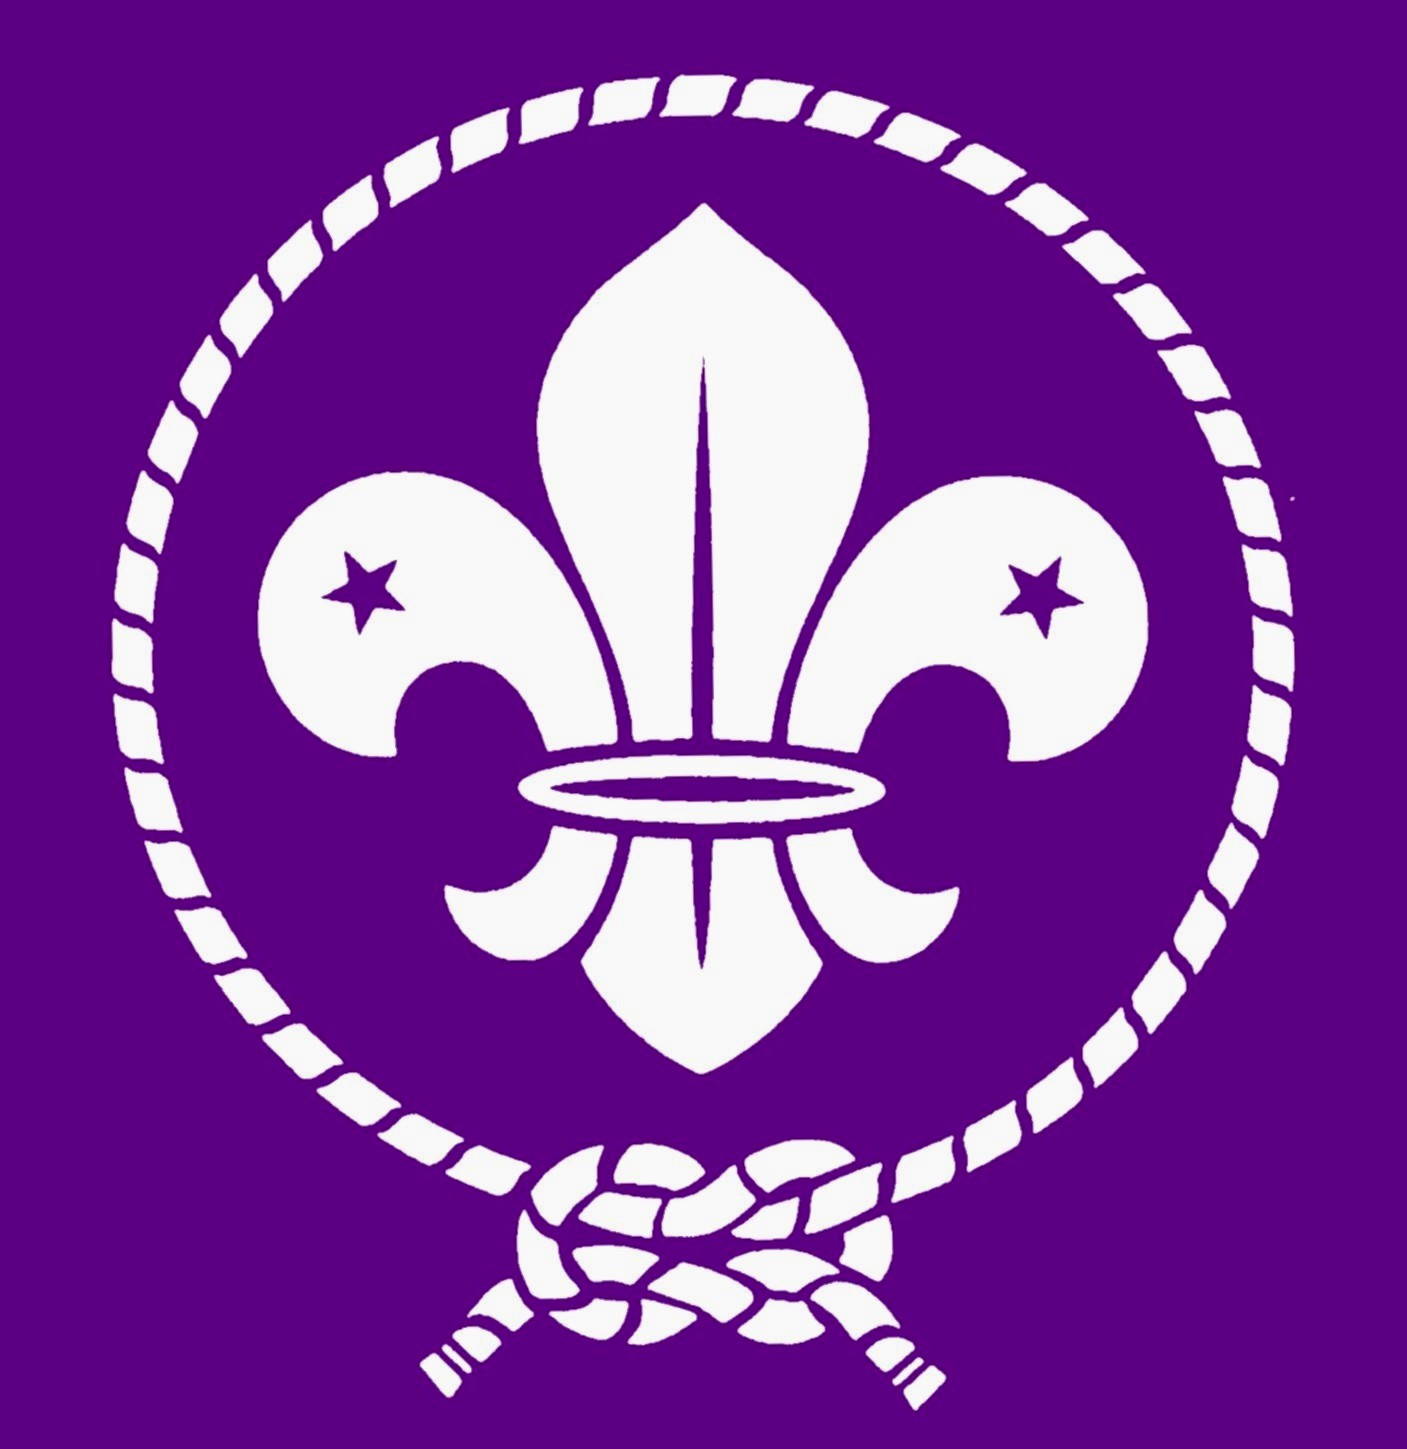 clip art boy scout logo - photo #36